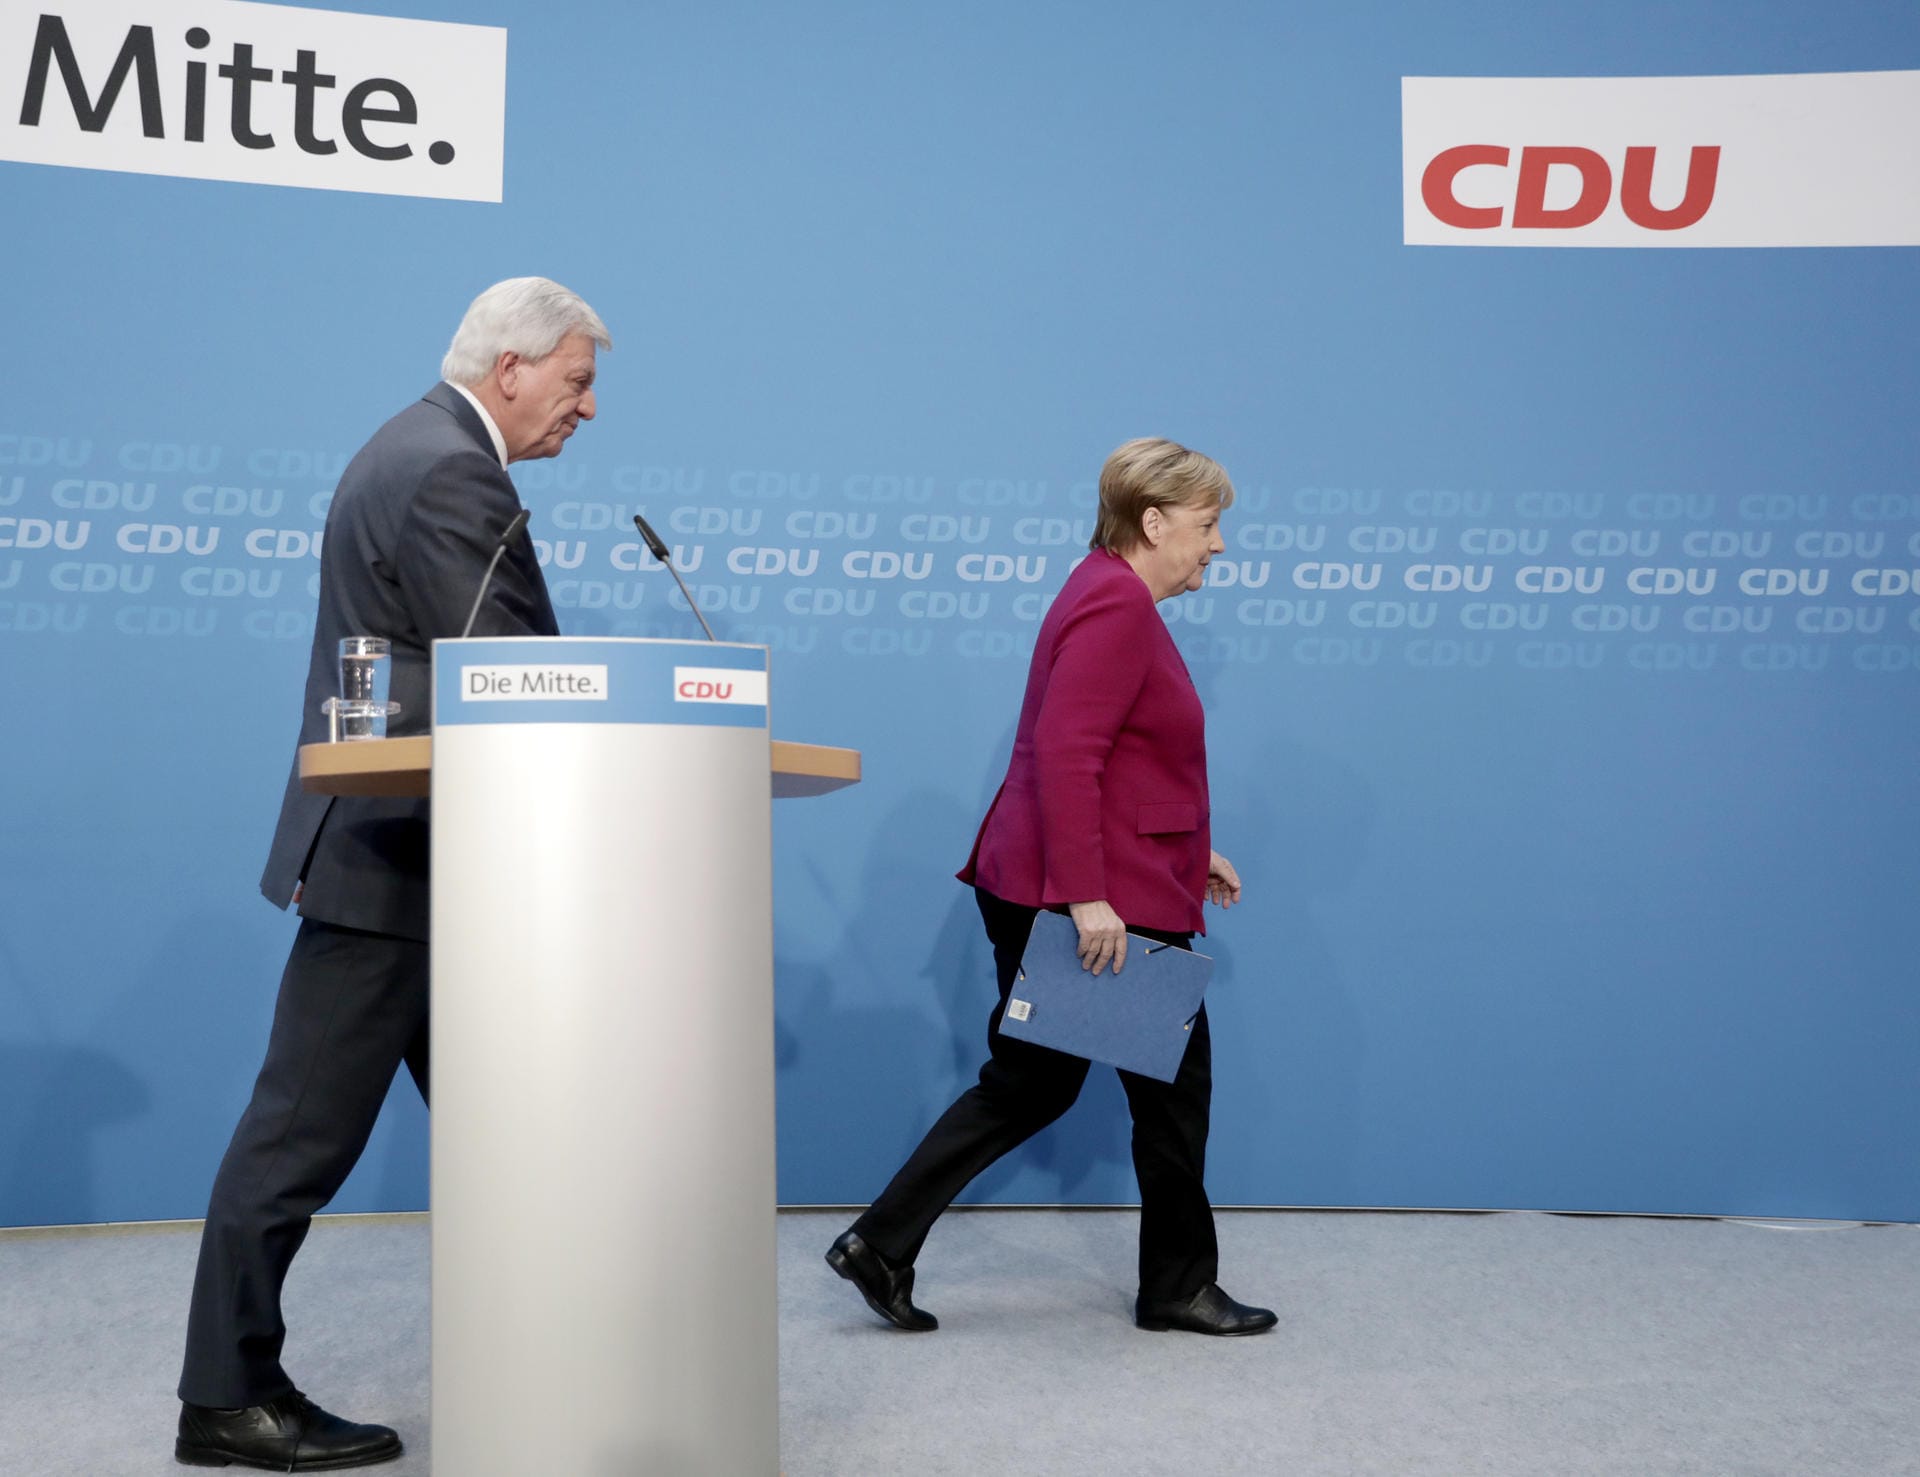 29. Oktober 2018: Unter dem Druck massiver Unzufriedenheit mit der Bundesregierung und dem CDU-Debakel bei der Landtagswahl in Hessen leitet Merkel das Ende ihrer politischen Ära ein und erklärt, dass sie den CDU-Vorsitz abgeben, aber bis 2021 Kanzlerin bleiben wolle.